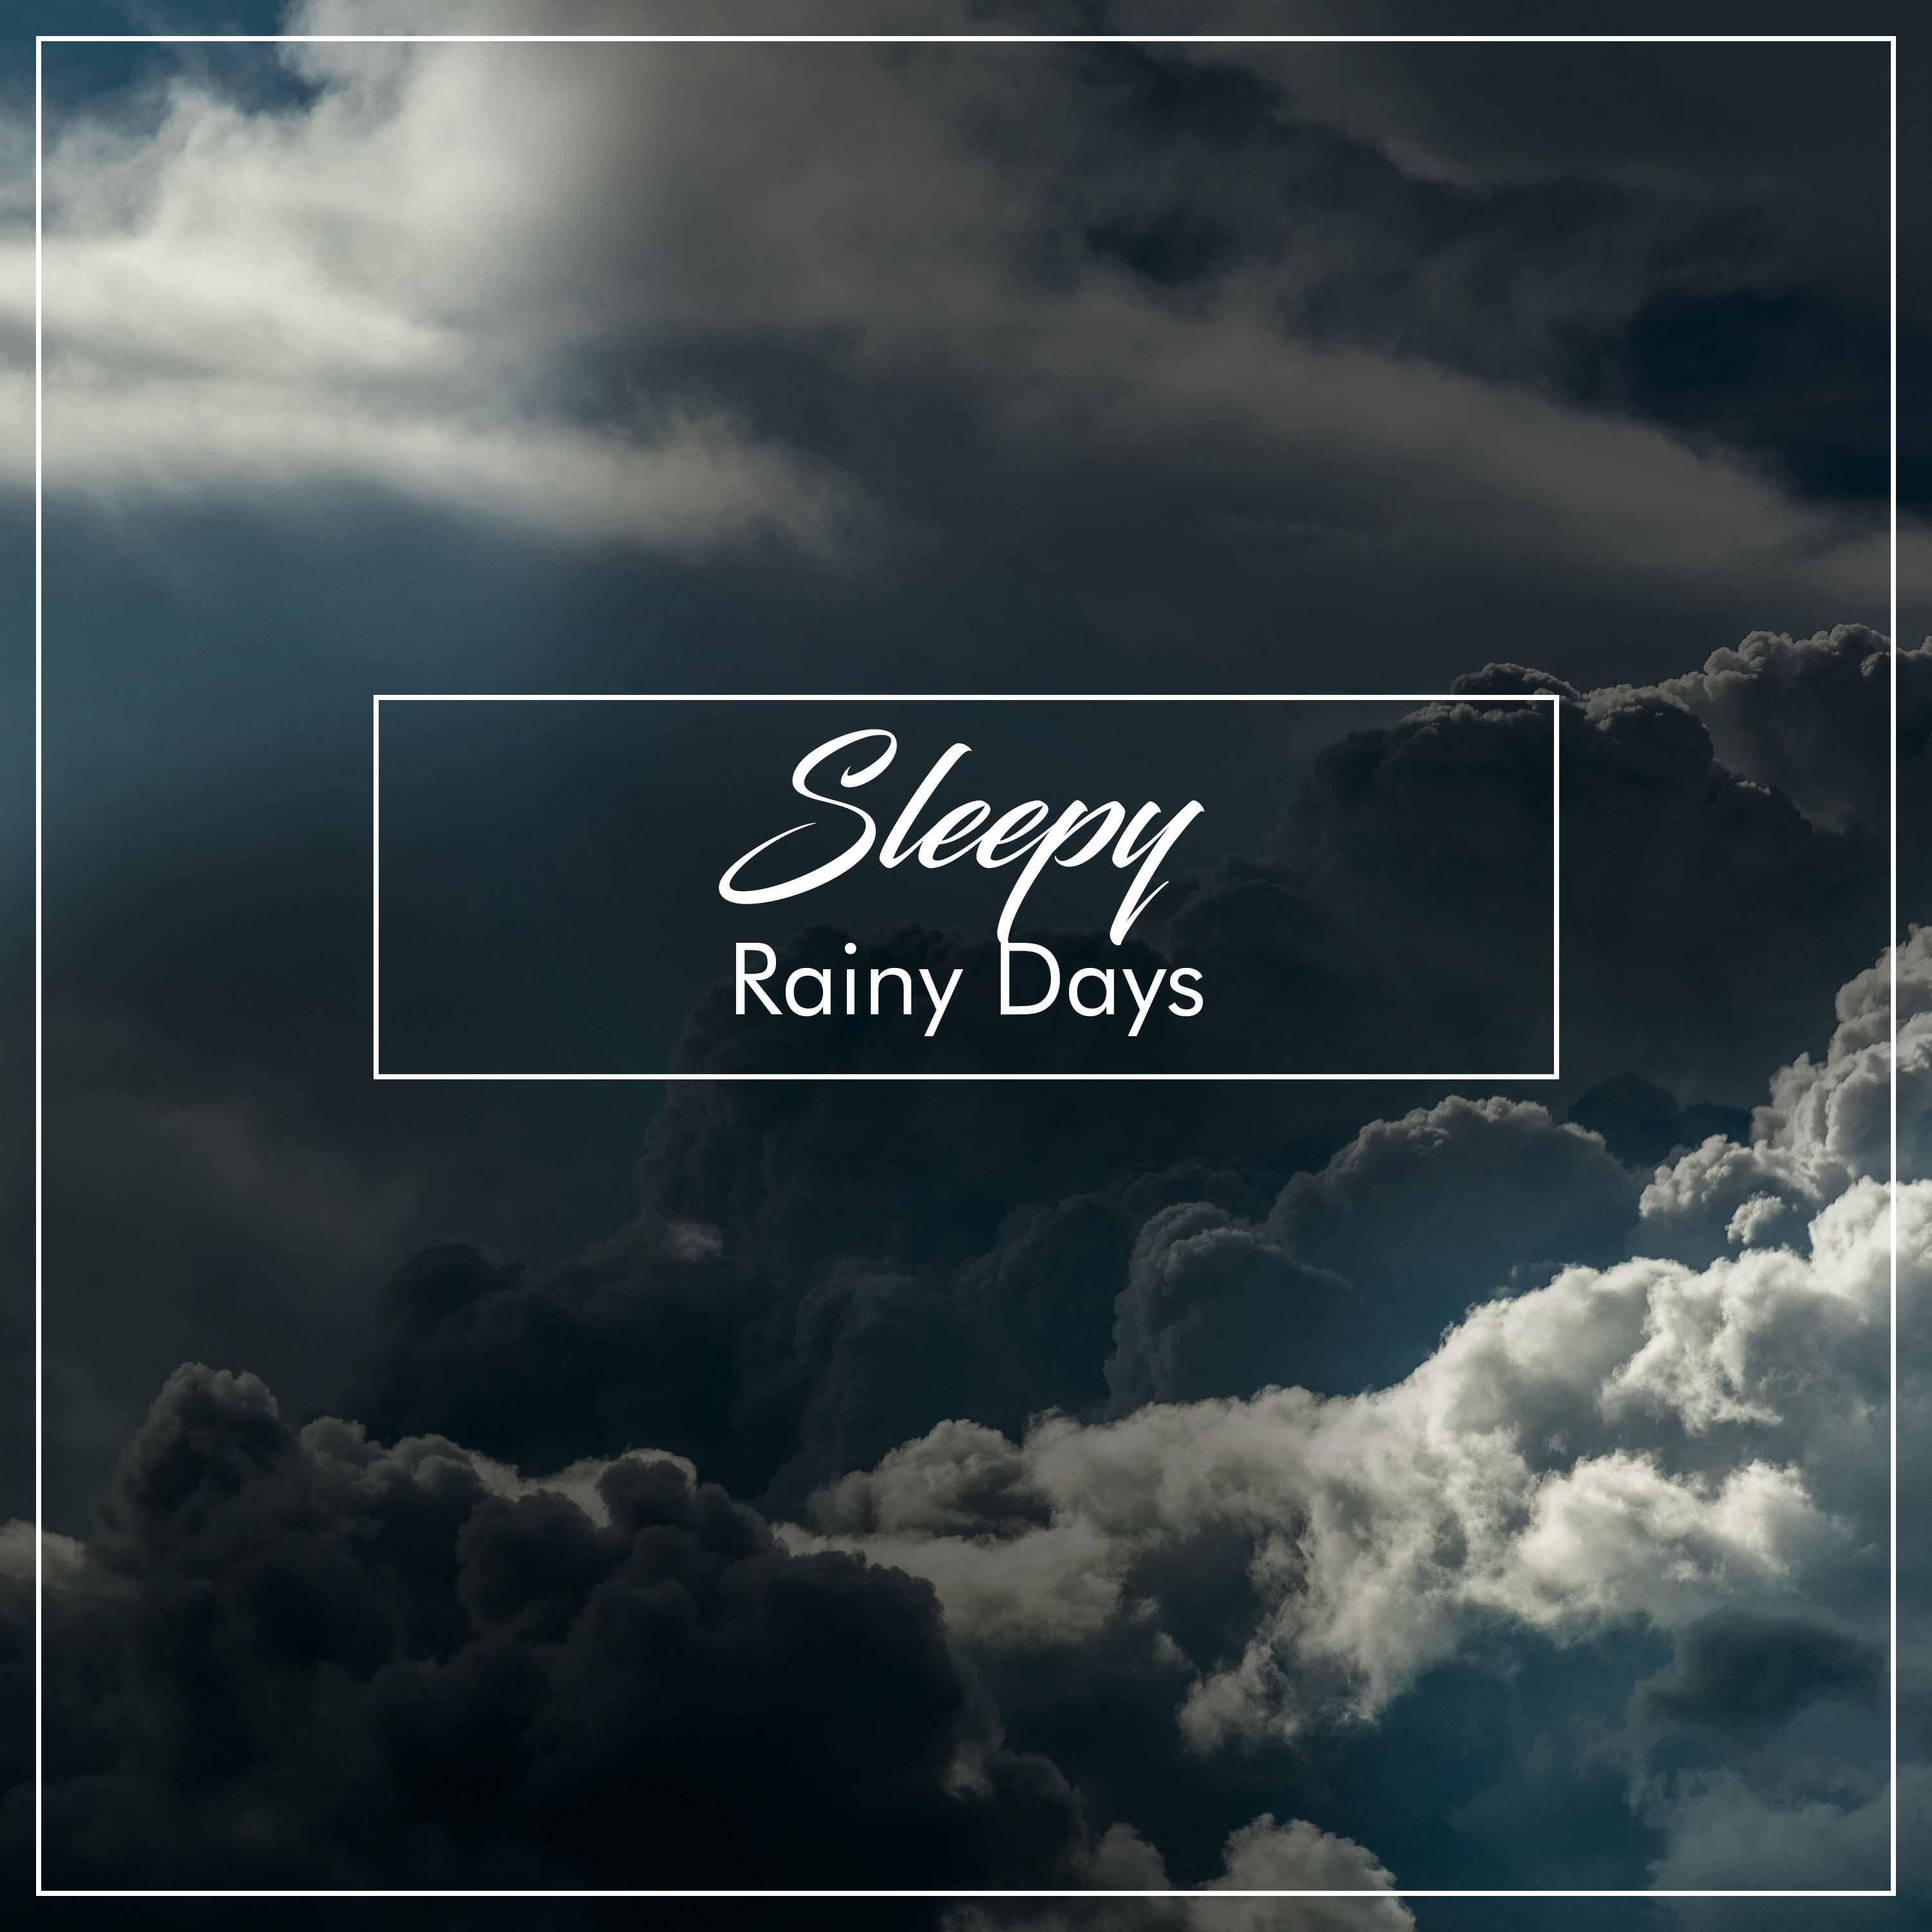 #14 Sleepy Rainy Days